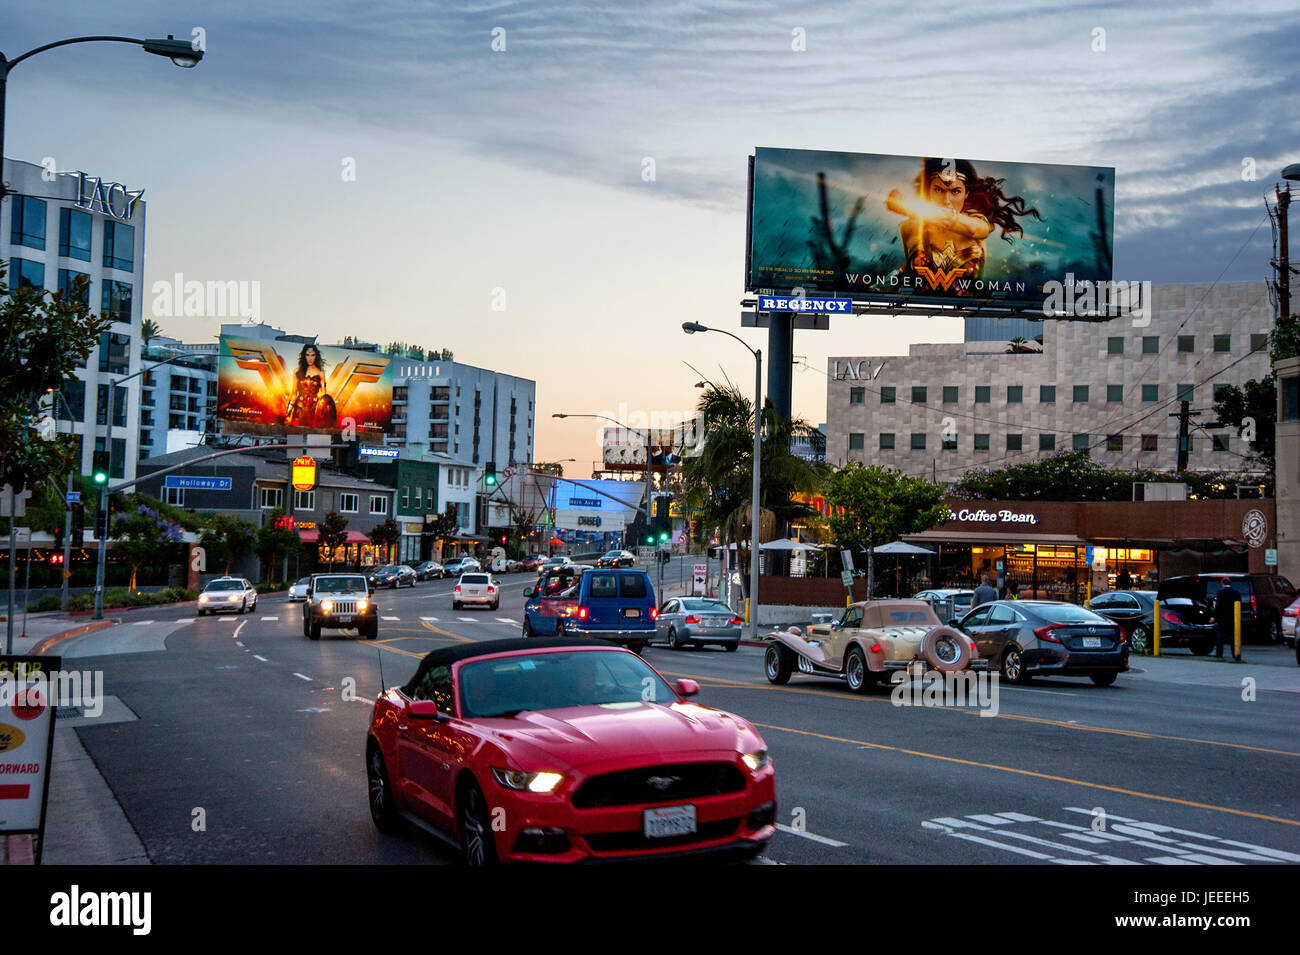 El Sunset Strip al anochecer con iluminados carteles promoviendo la película Wonder Woman en Los Angeles, CA. Foto de stock